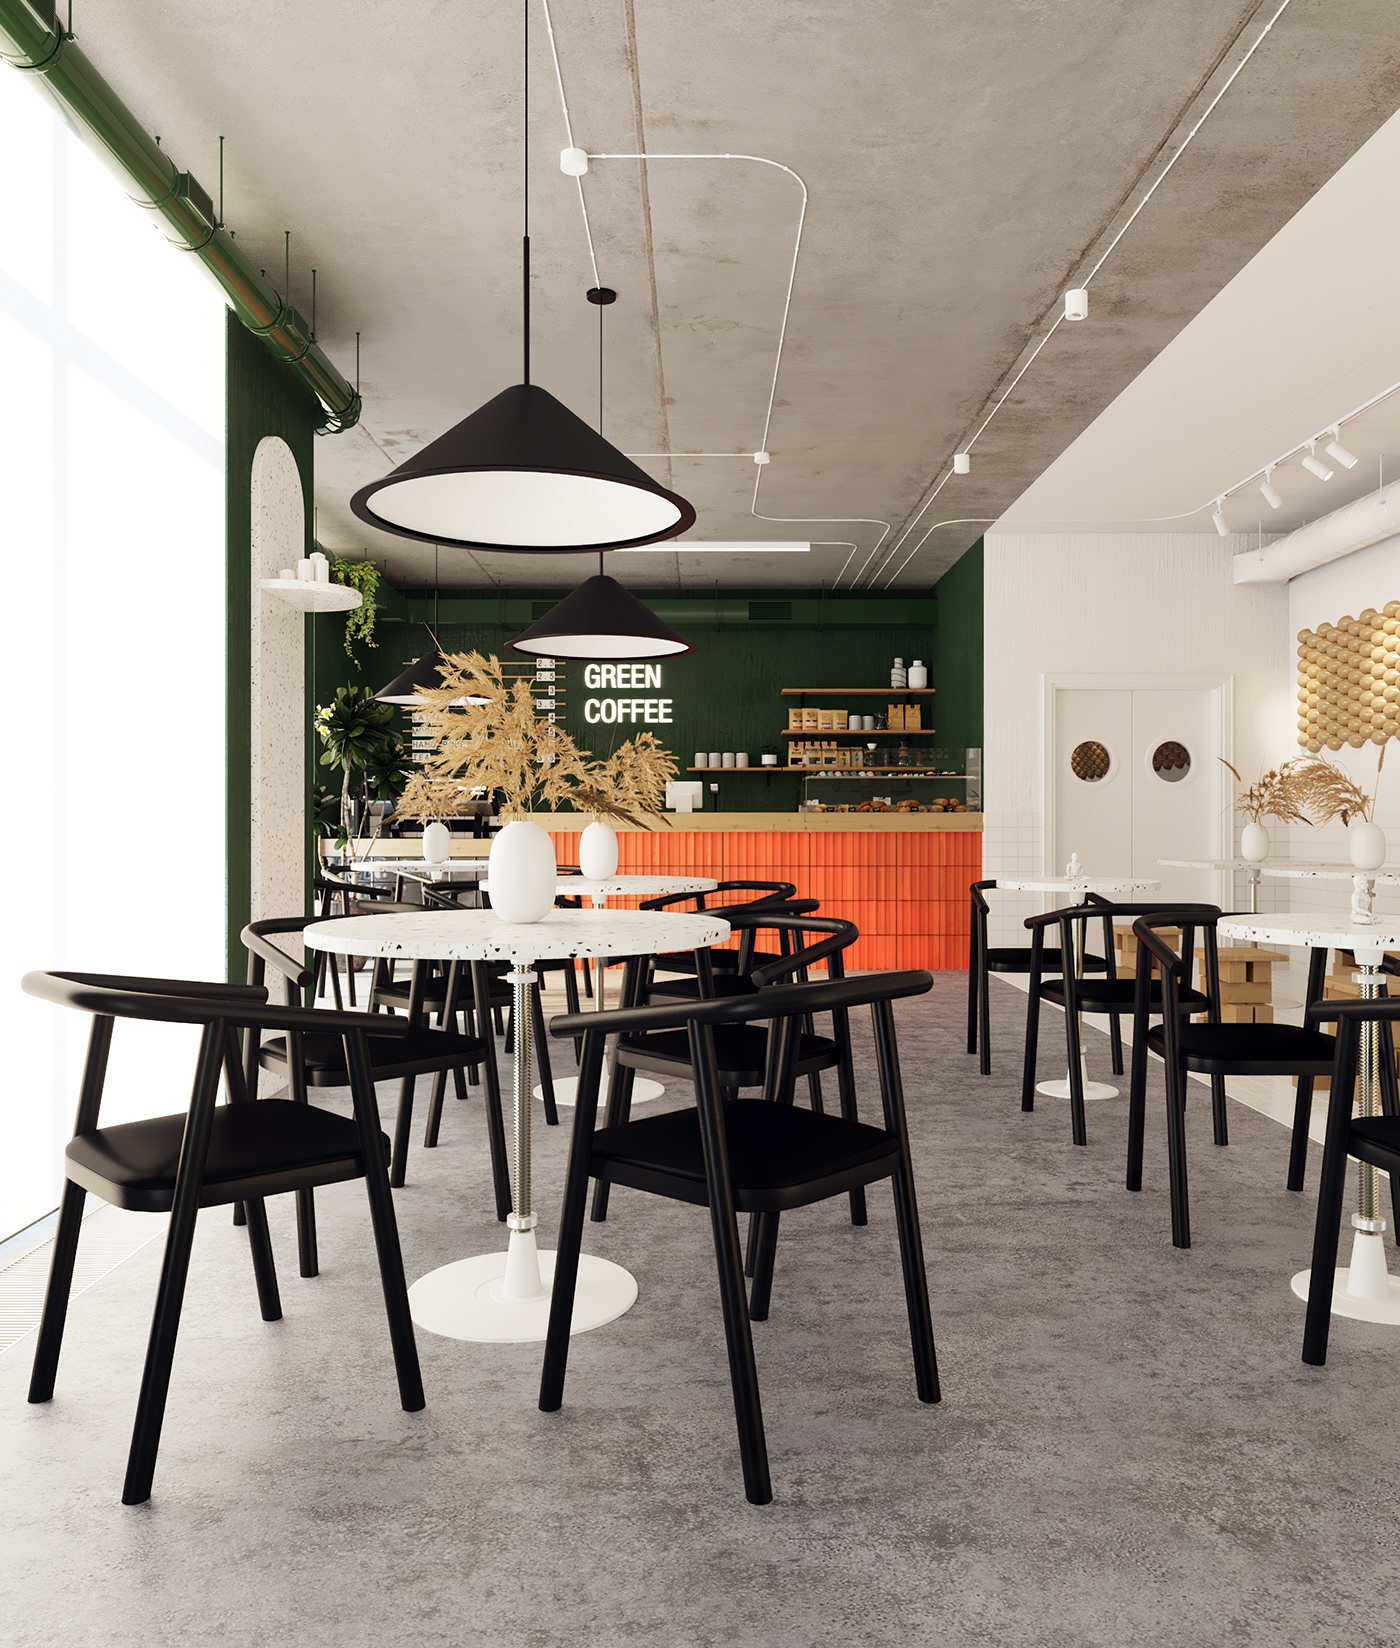 Interior interiordesign coffeeshop moscowdesign saintpetersburgdesign interiordesigner archviz cafe restaurant designcafe